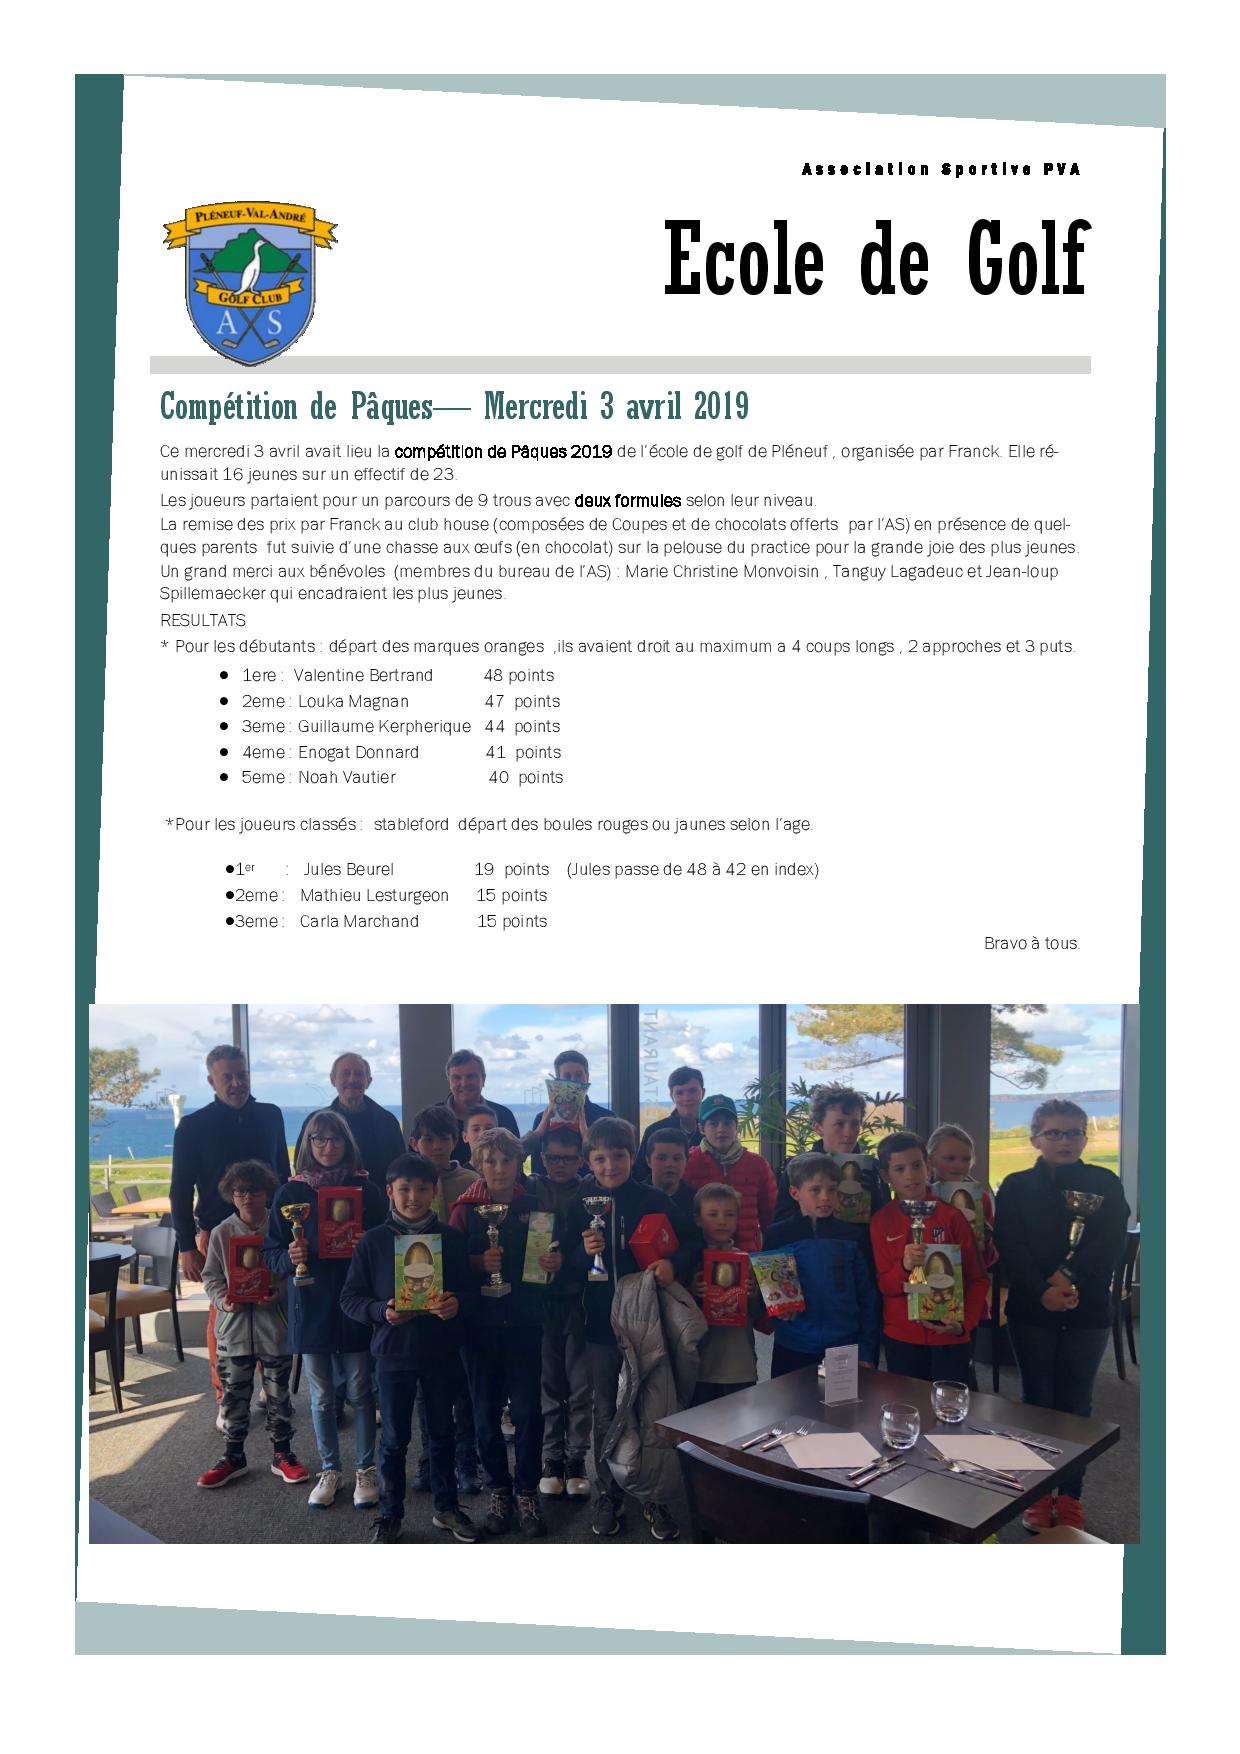 Ecole_de_golf_competition_de_Peques-page-001.jpg